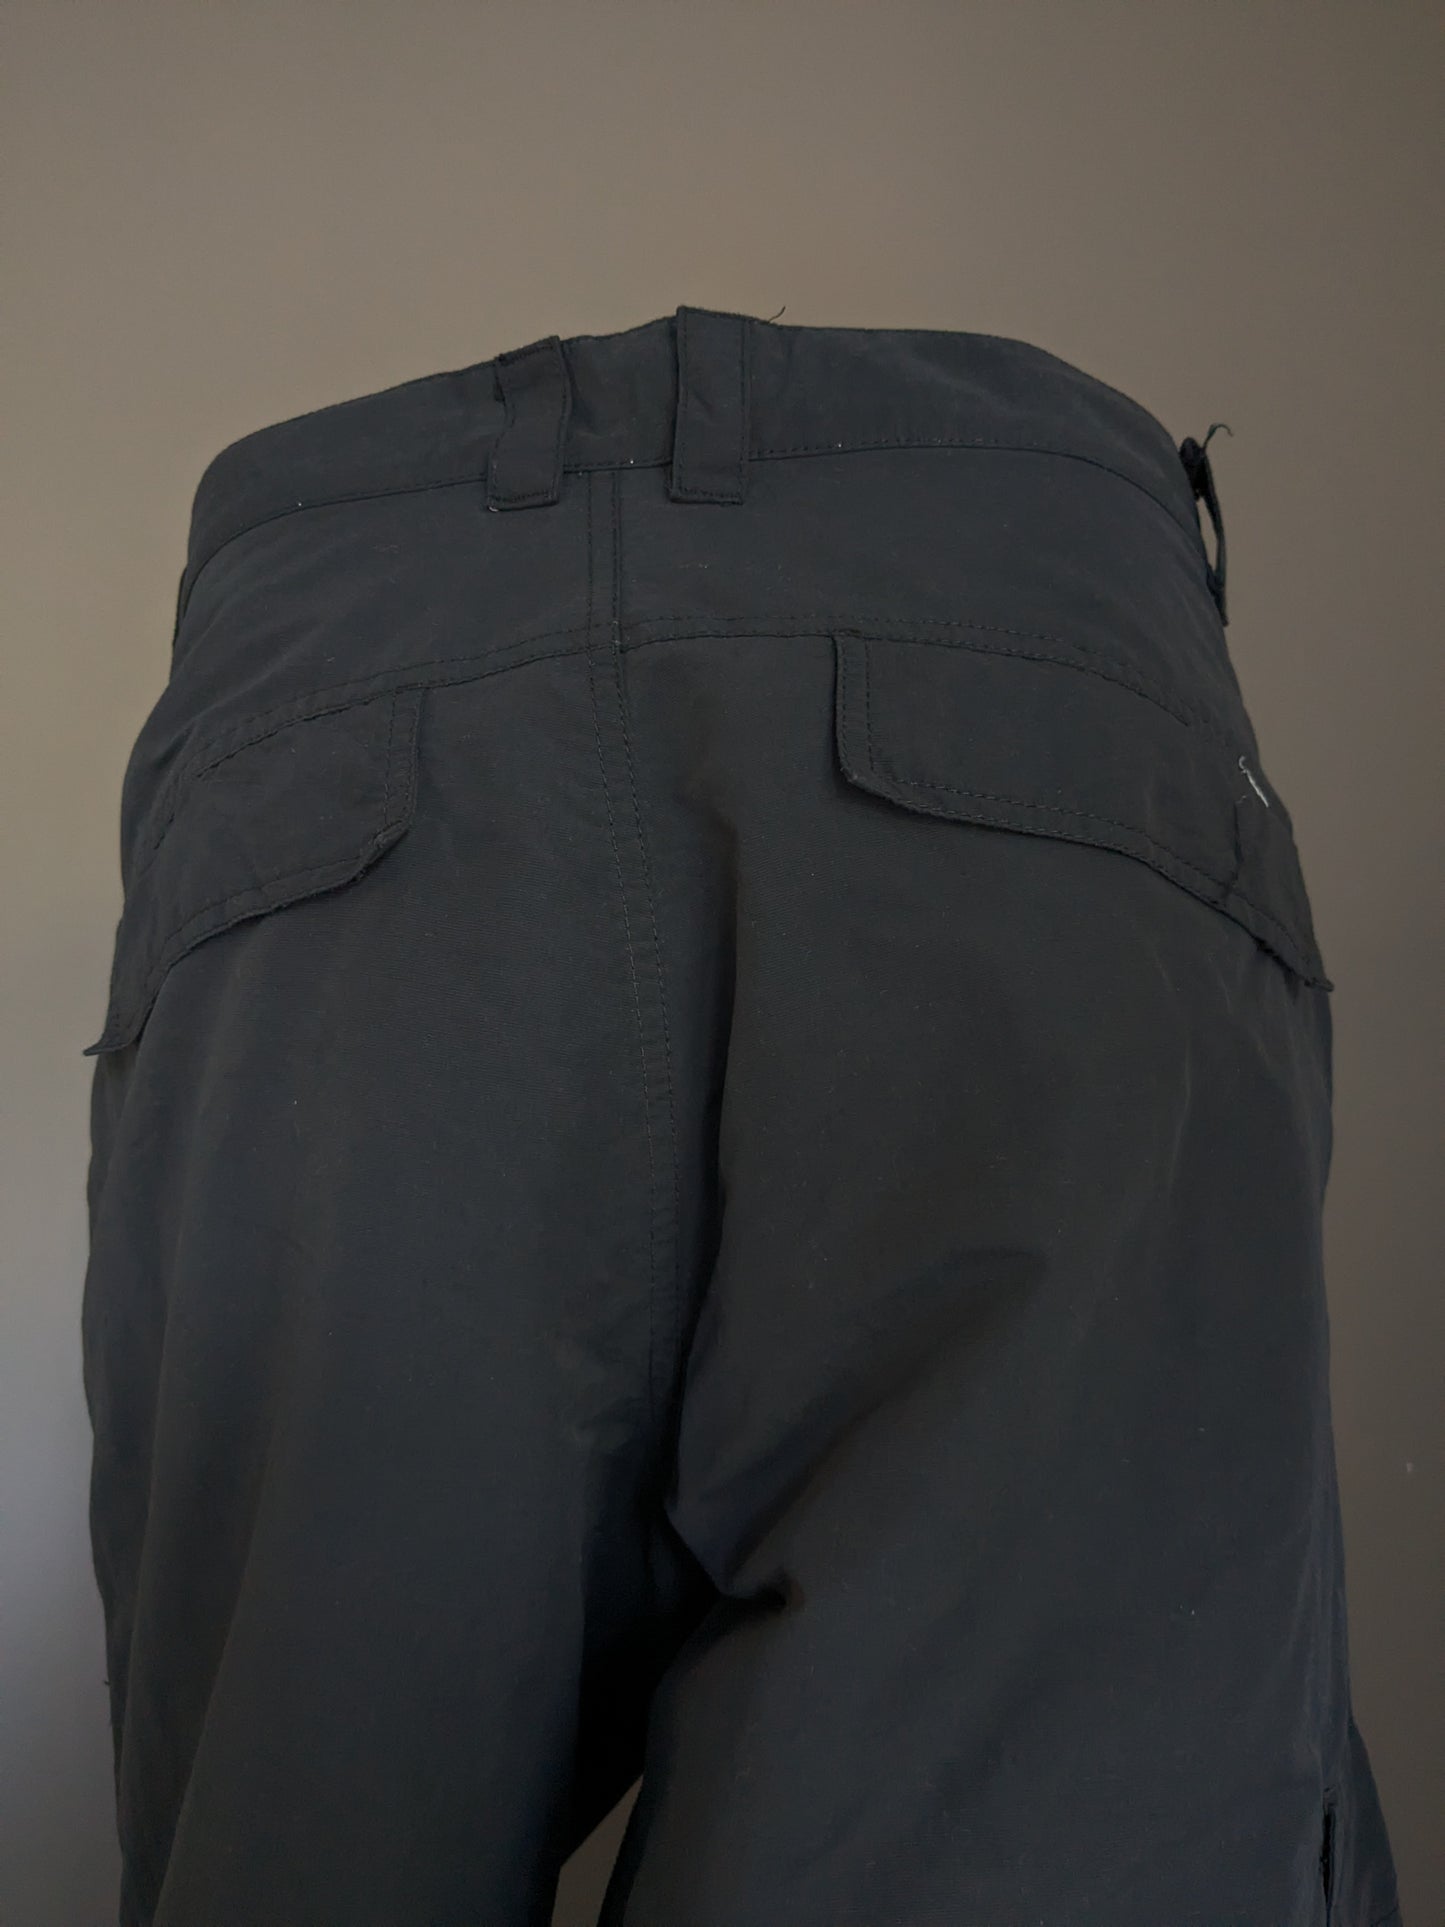 Pantalon extérieur Tenson. Doublure chaude douce. Couleur noire. Taille 54 / L.